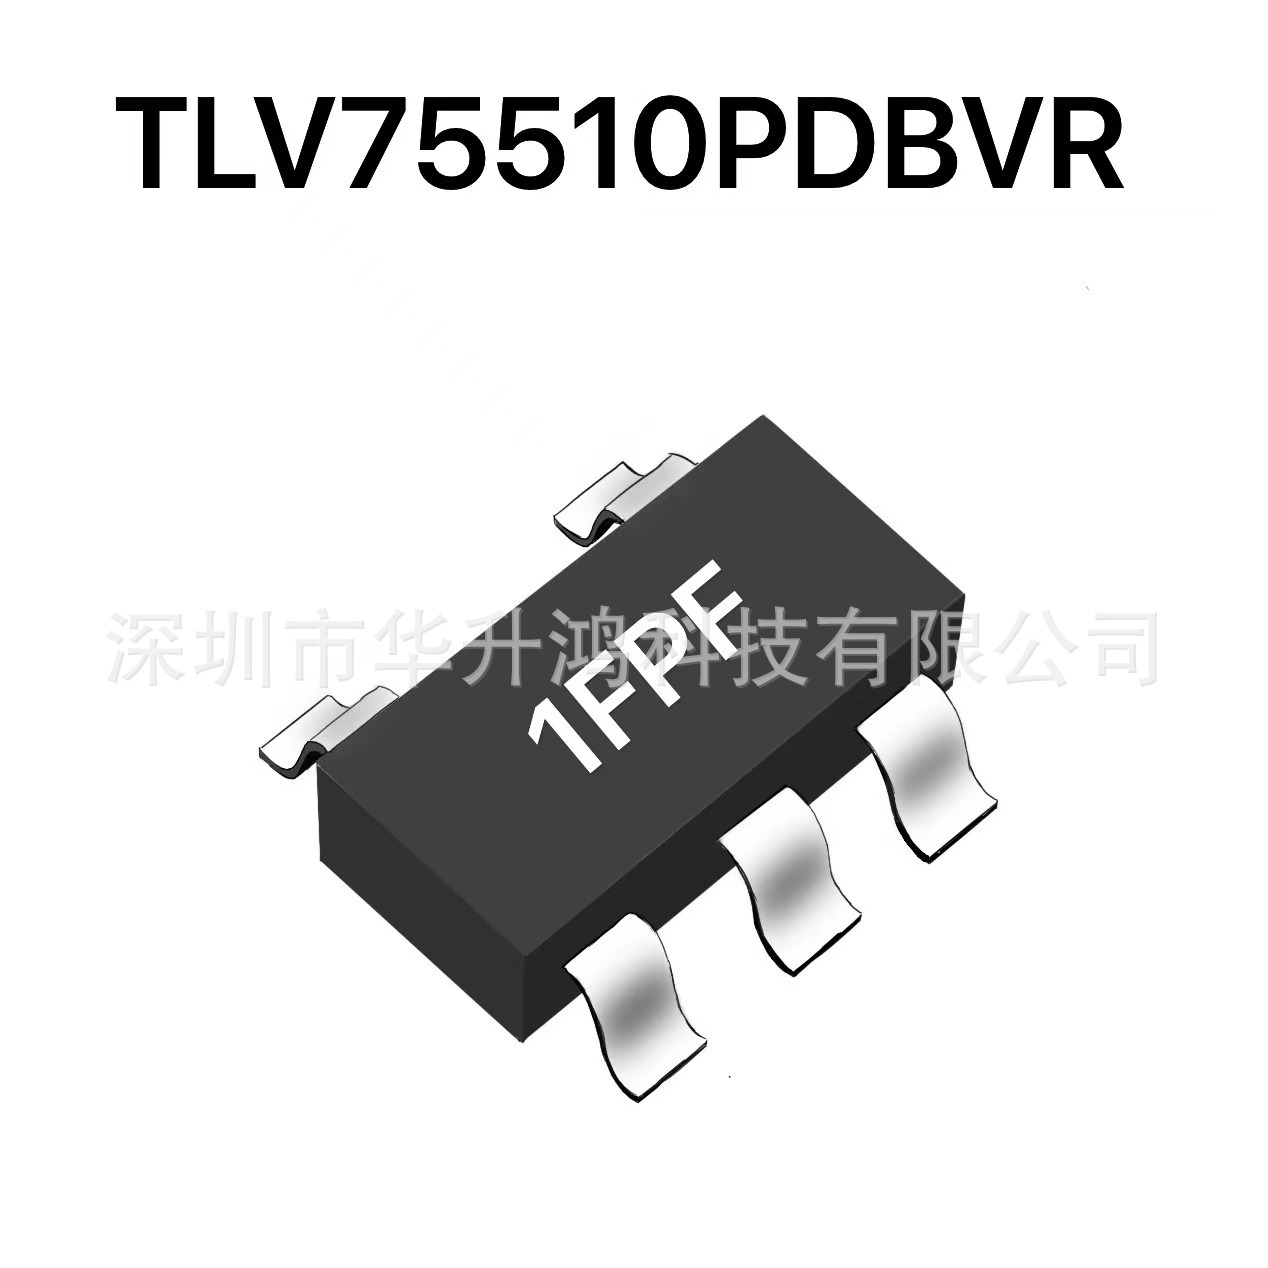 TLV75510PDBVR SOT23-5 丝印1FPF 1V/500mA LDO线性稳压器芯片